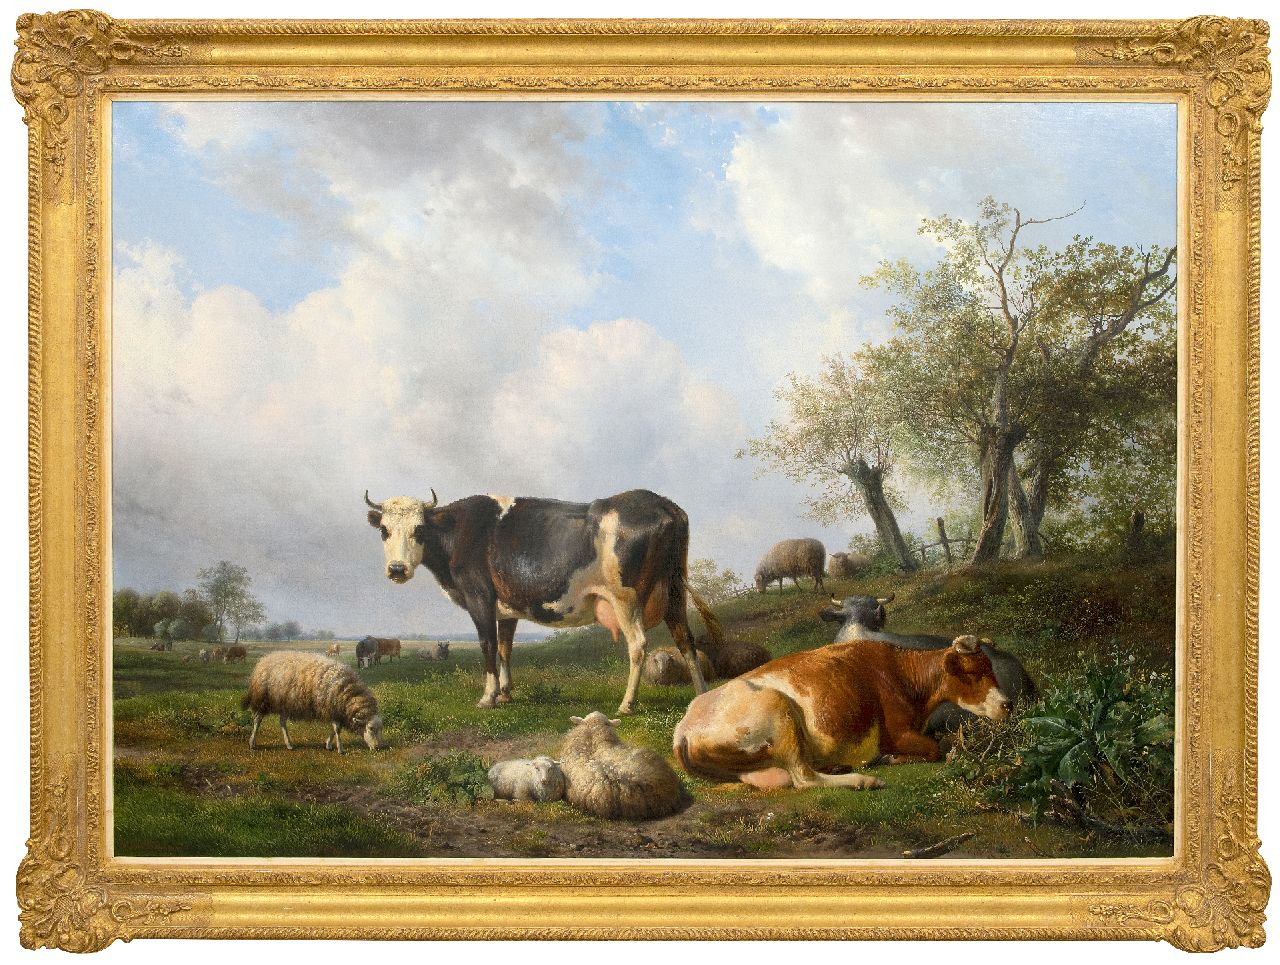 Sande Bakhuyzen H. van de | Hendrikus van de Sande Bakhuyzen | Schilderijen te koop aangeboden | Landschap met rustende koeien en schapen, olieverf op doek 108,0 x 150,0 cm, gesigneerd linksonder